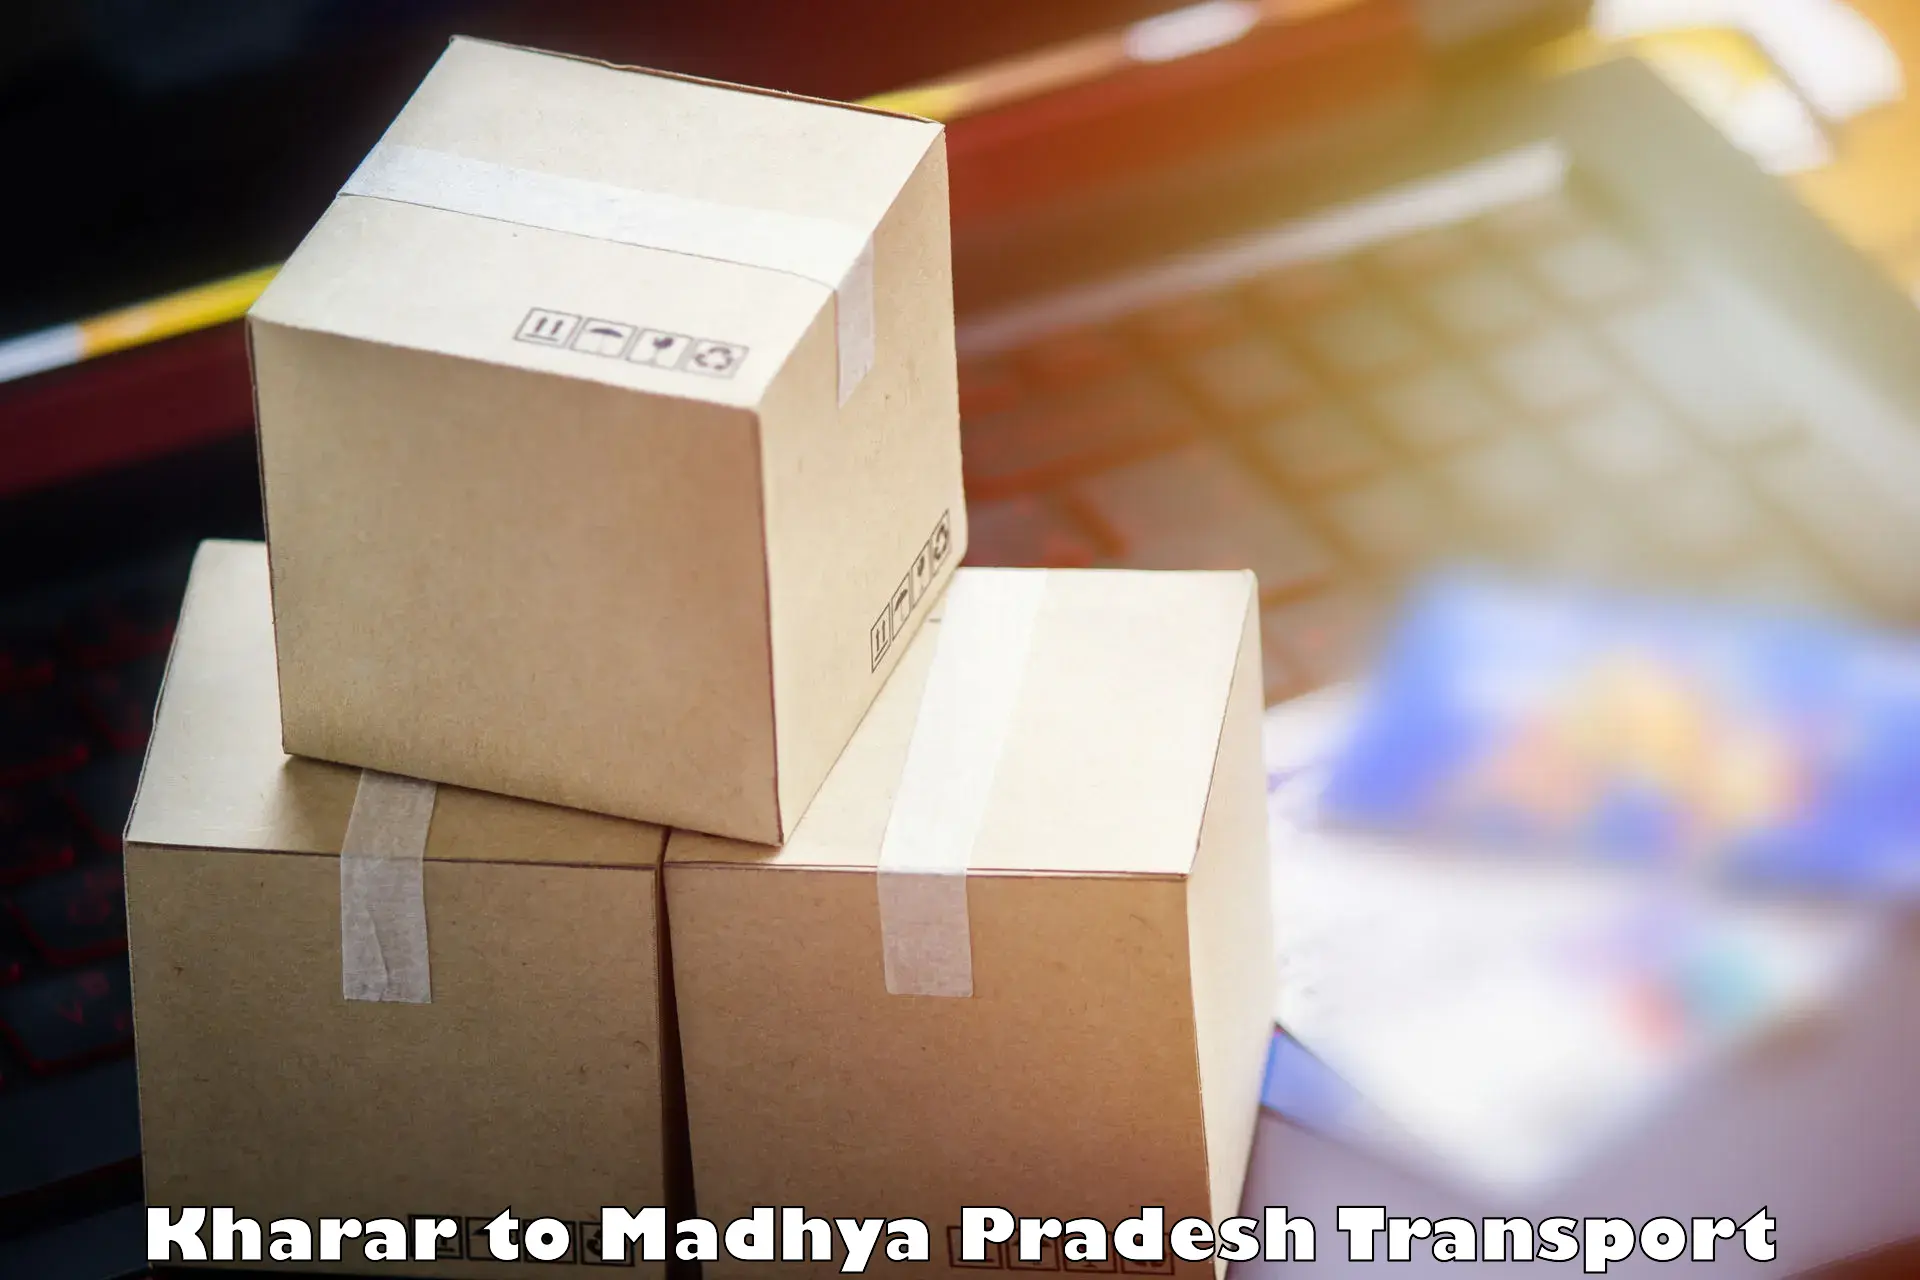 Logistics transportation services Kharar to Indore